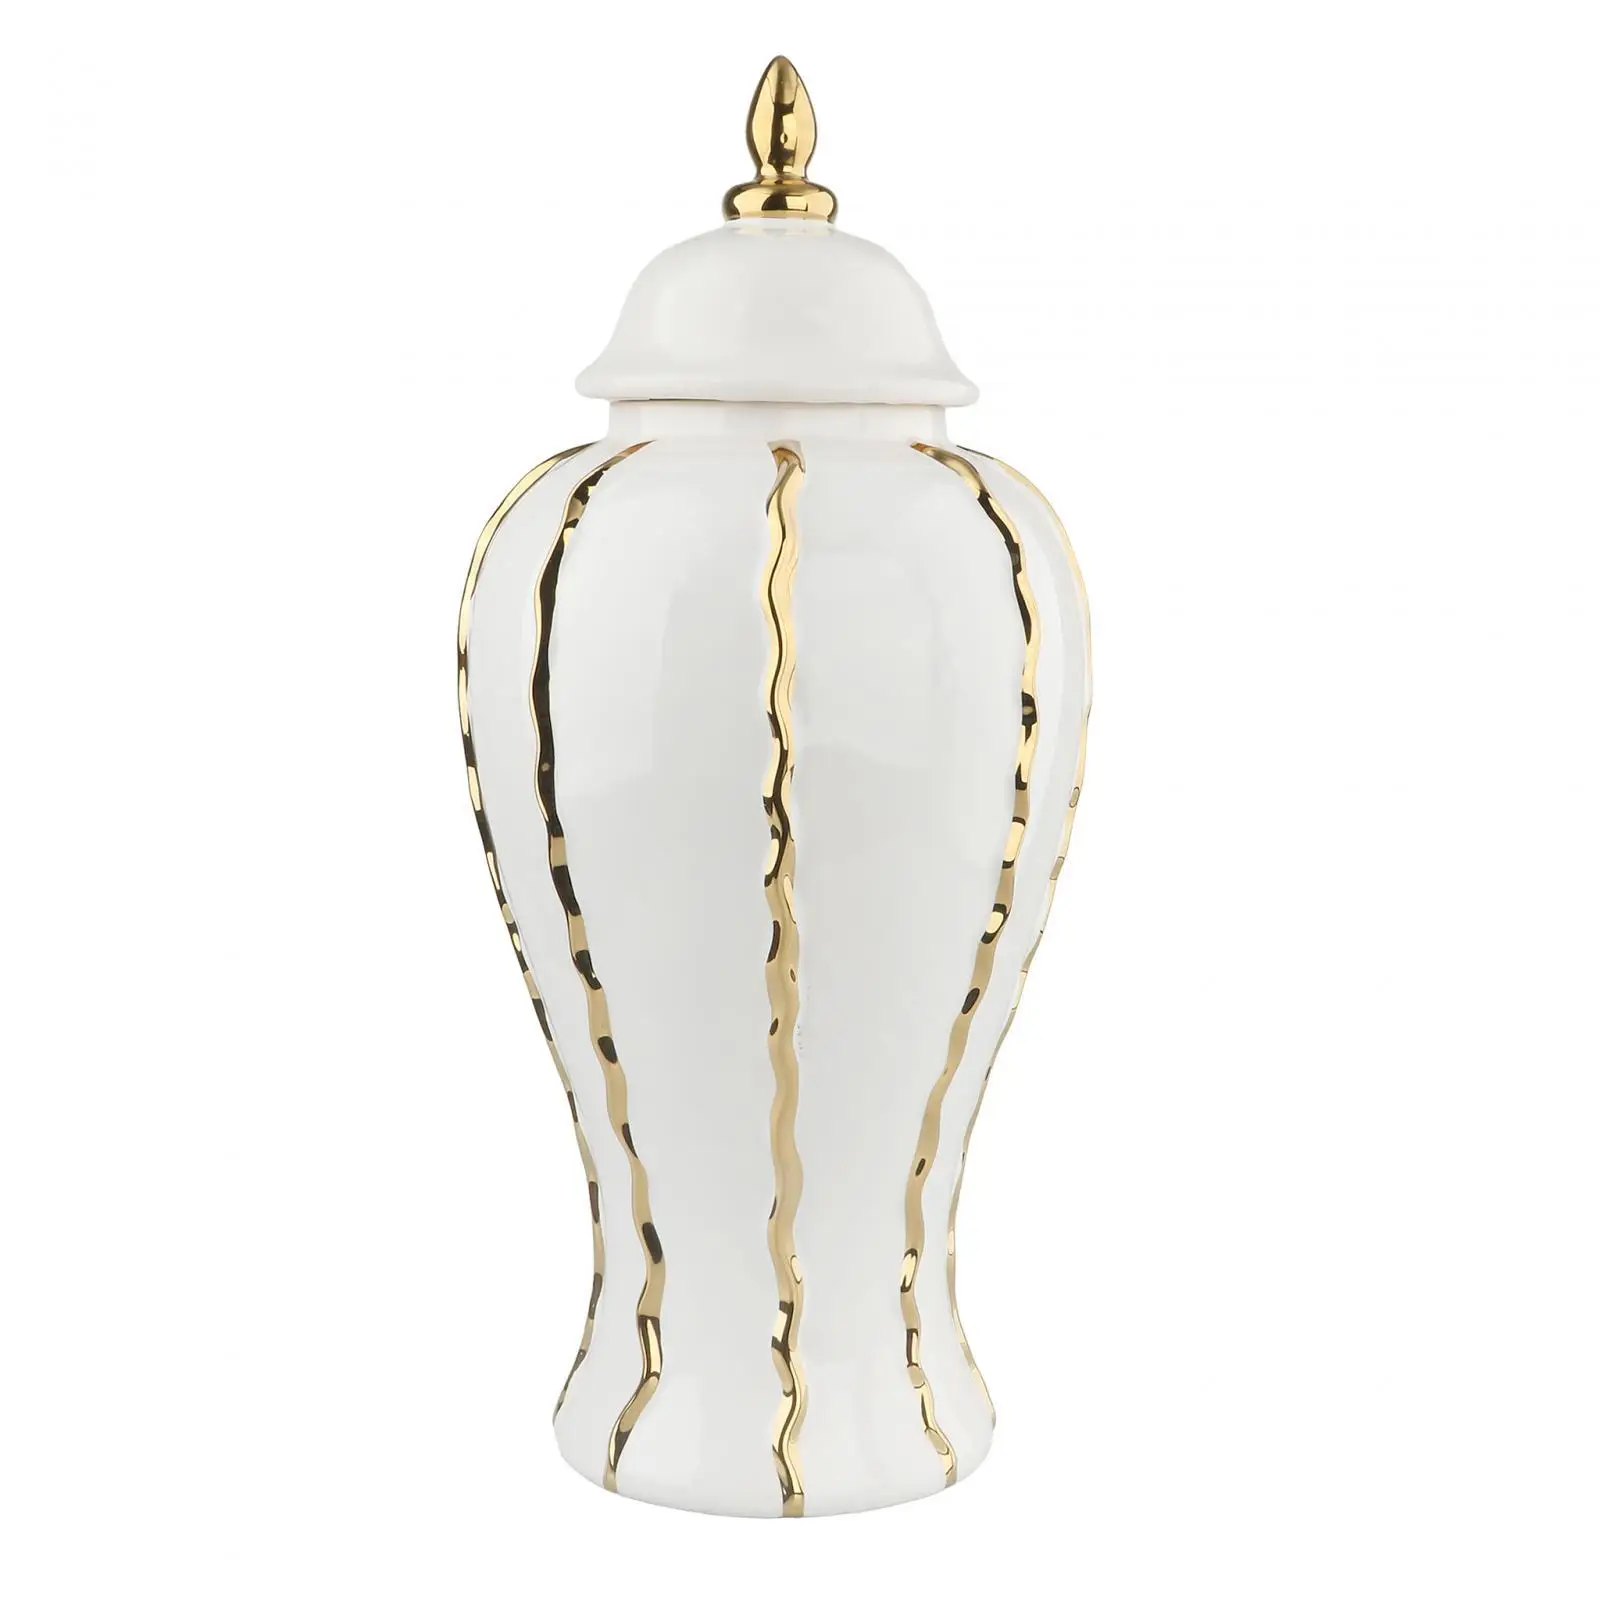 

Porcelain Ginger Jar Ornament with Lid Gift Bud Vase Chinese Vase Ceramic Vase for Bedroom Entrance Fireplace Party Centerpiece